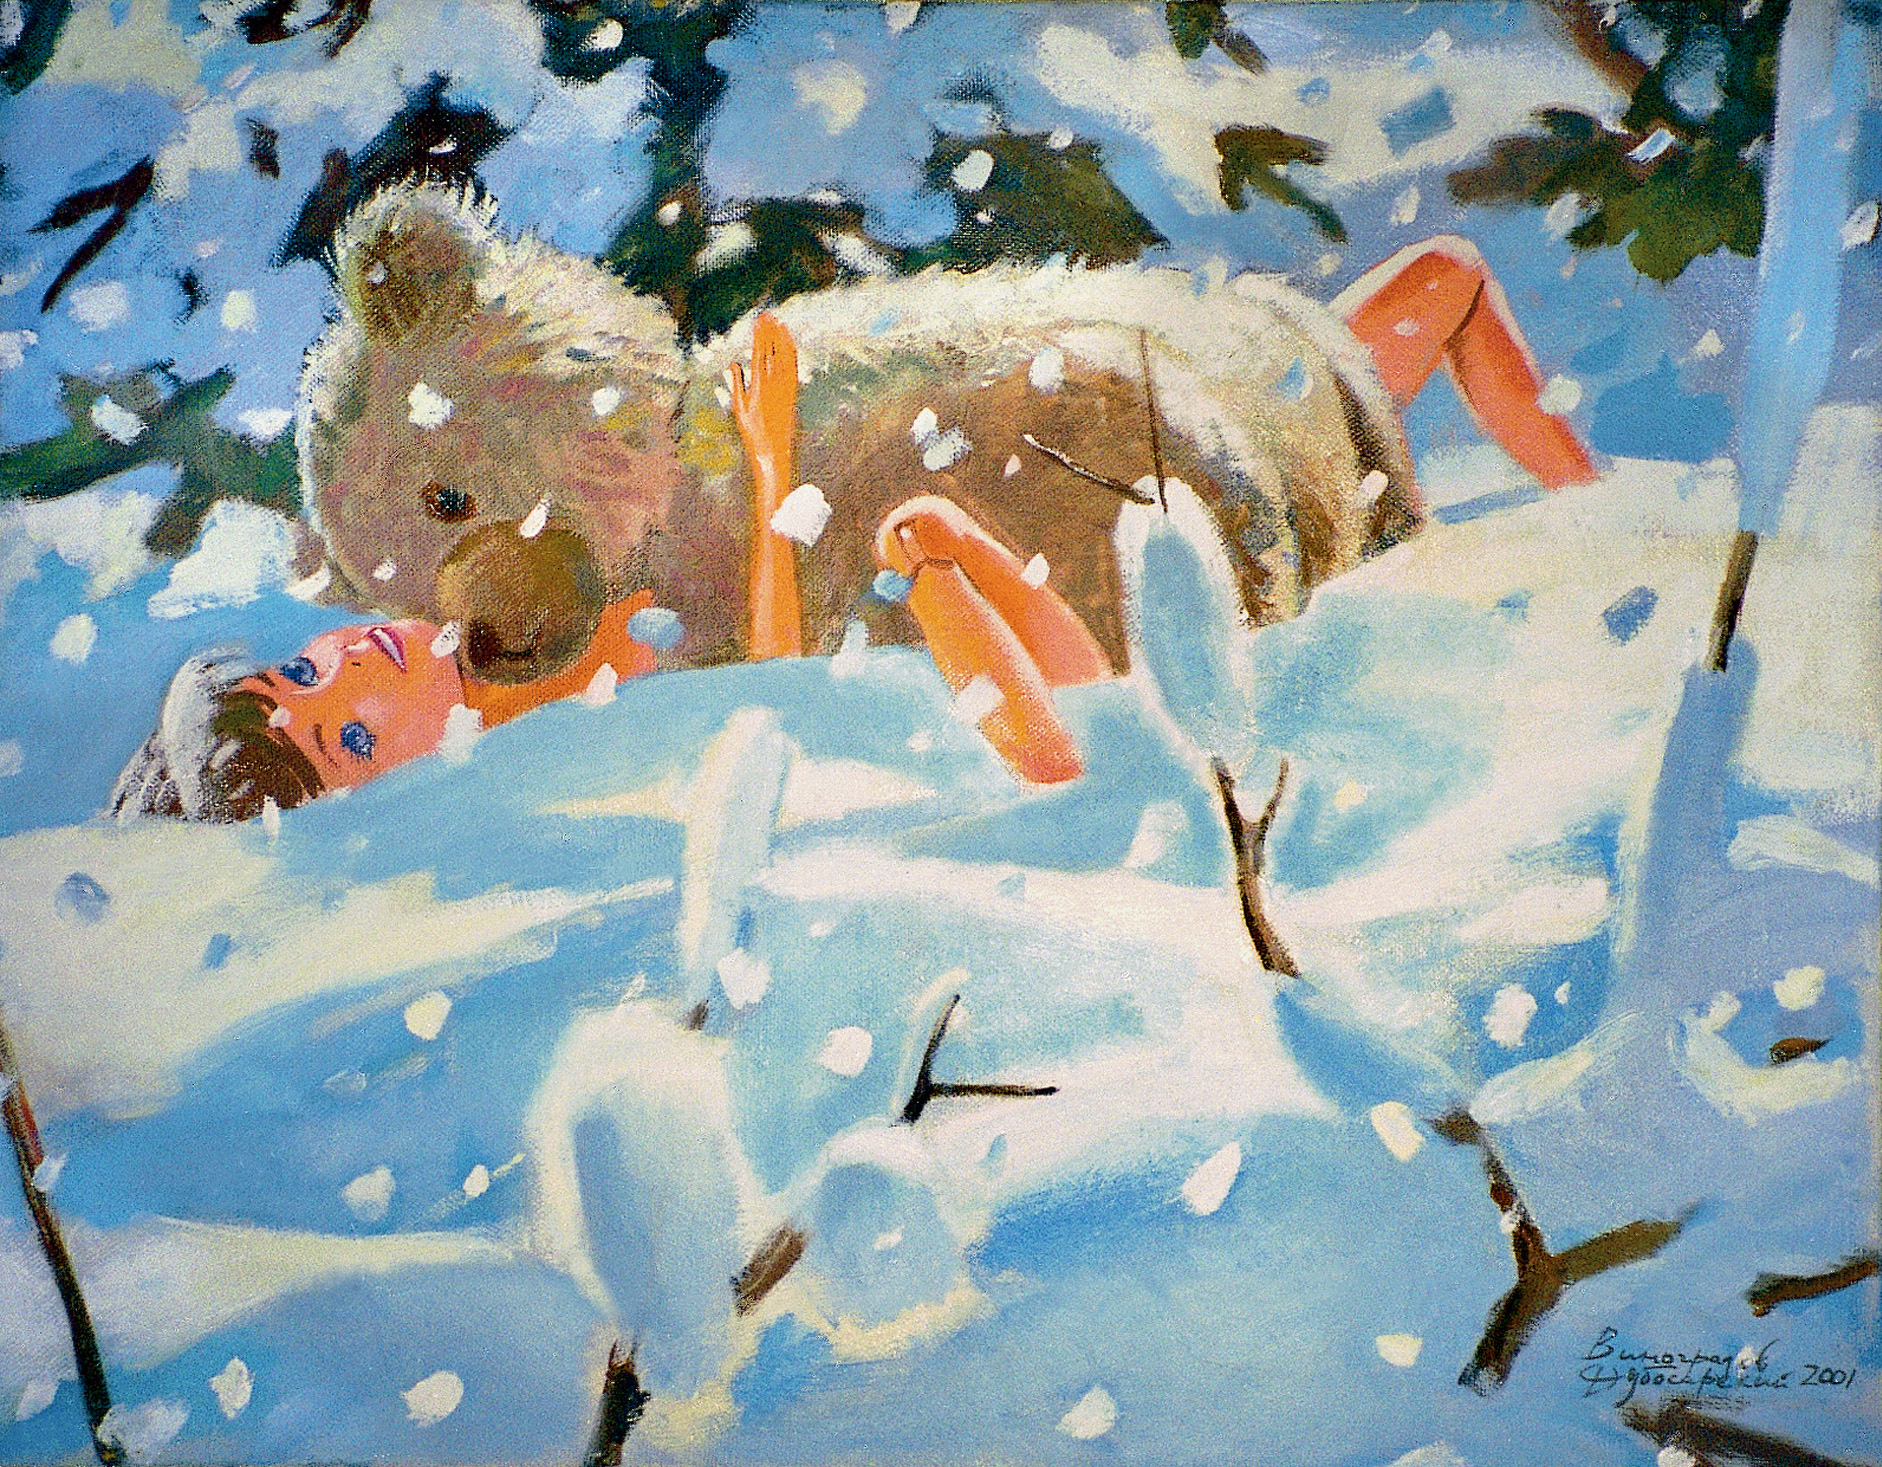    (), 2001.   -   (Vladimir Dubossarsky - Aleksandr Vinogradov) -  . -.  . Contemporary Russian Art